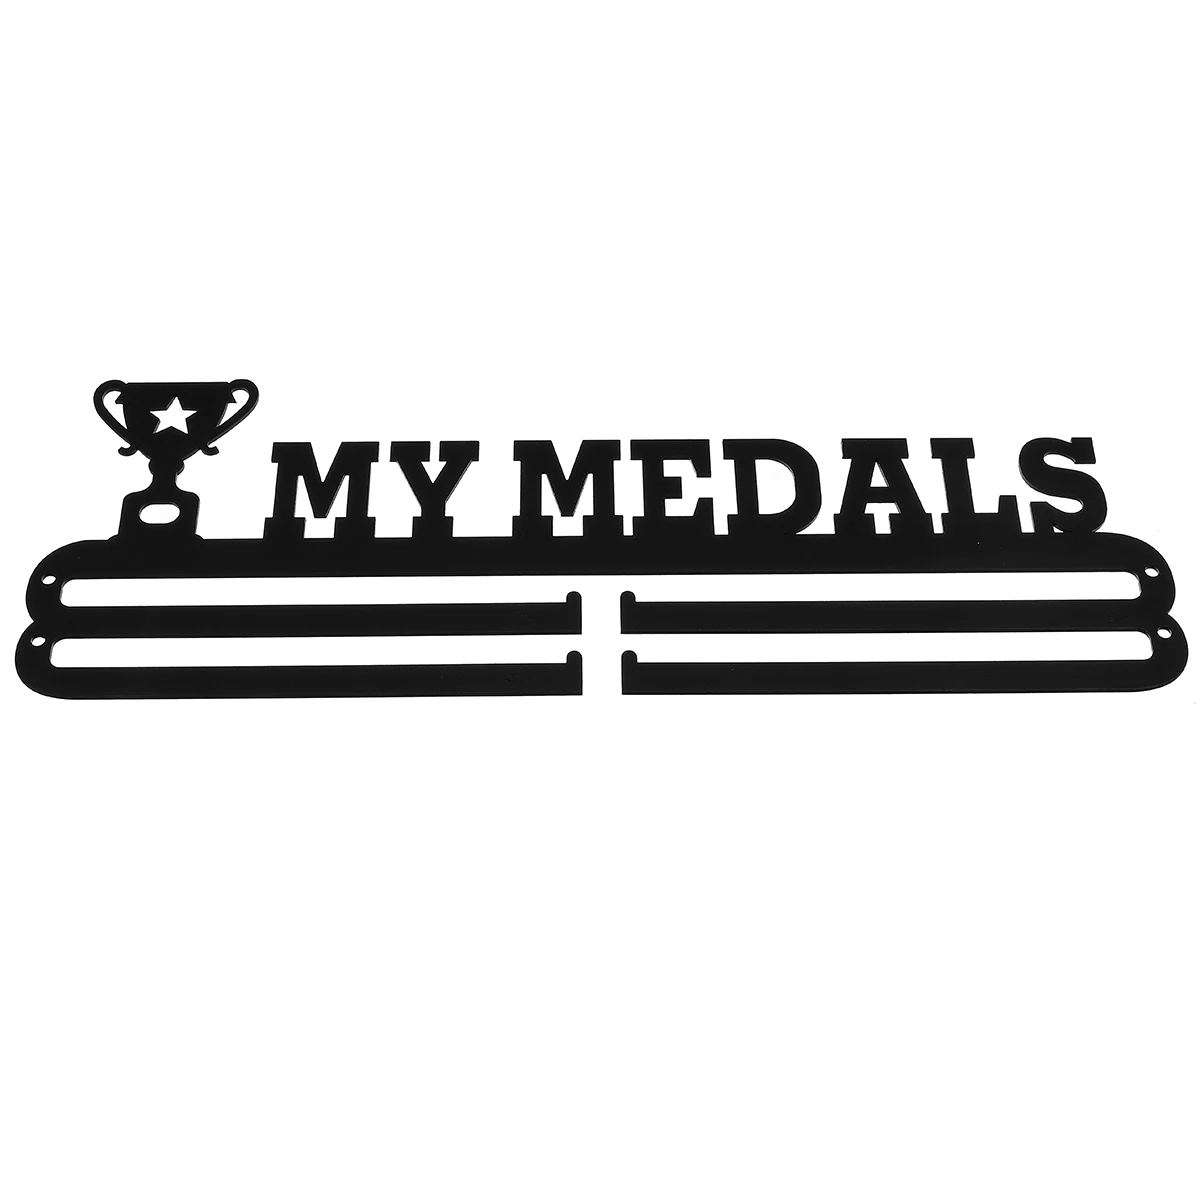 400x158 мм нержавеющая сталь медаль Вешалка медаль держатель дисплей стойка Бег Плавание тренажерный зал марафоны велосипед Спорт медаль подарок украшение - Цвет: MY MEDAL